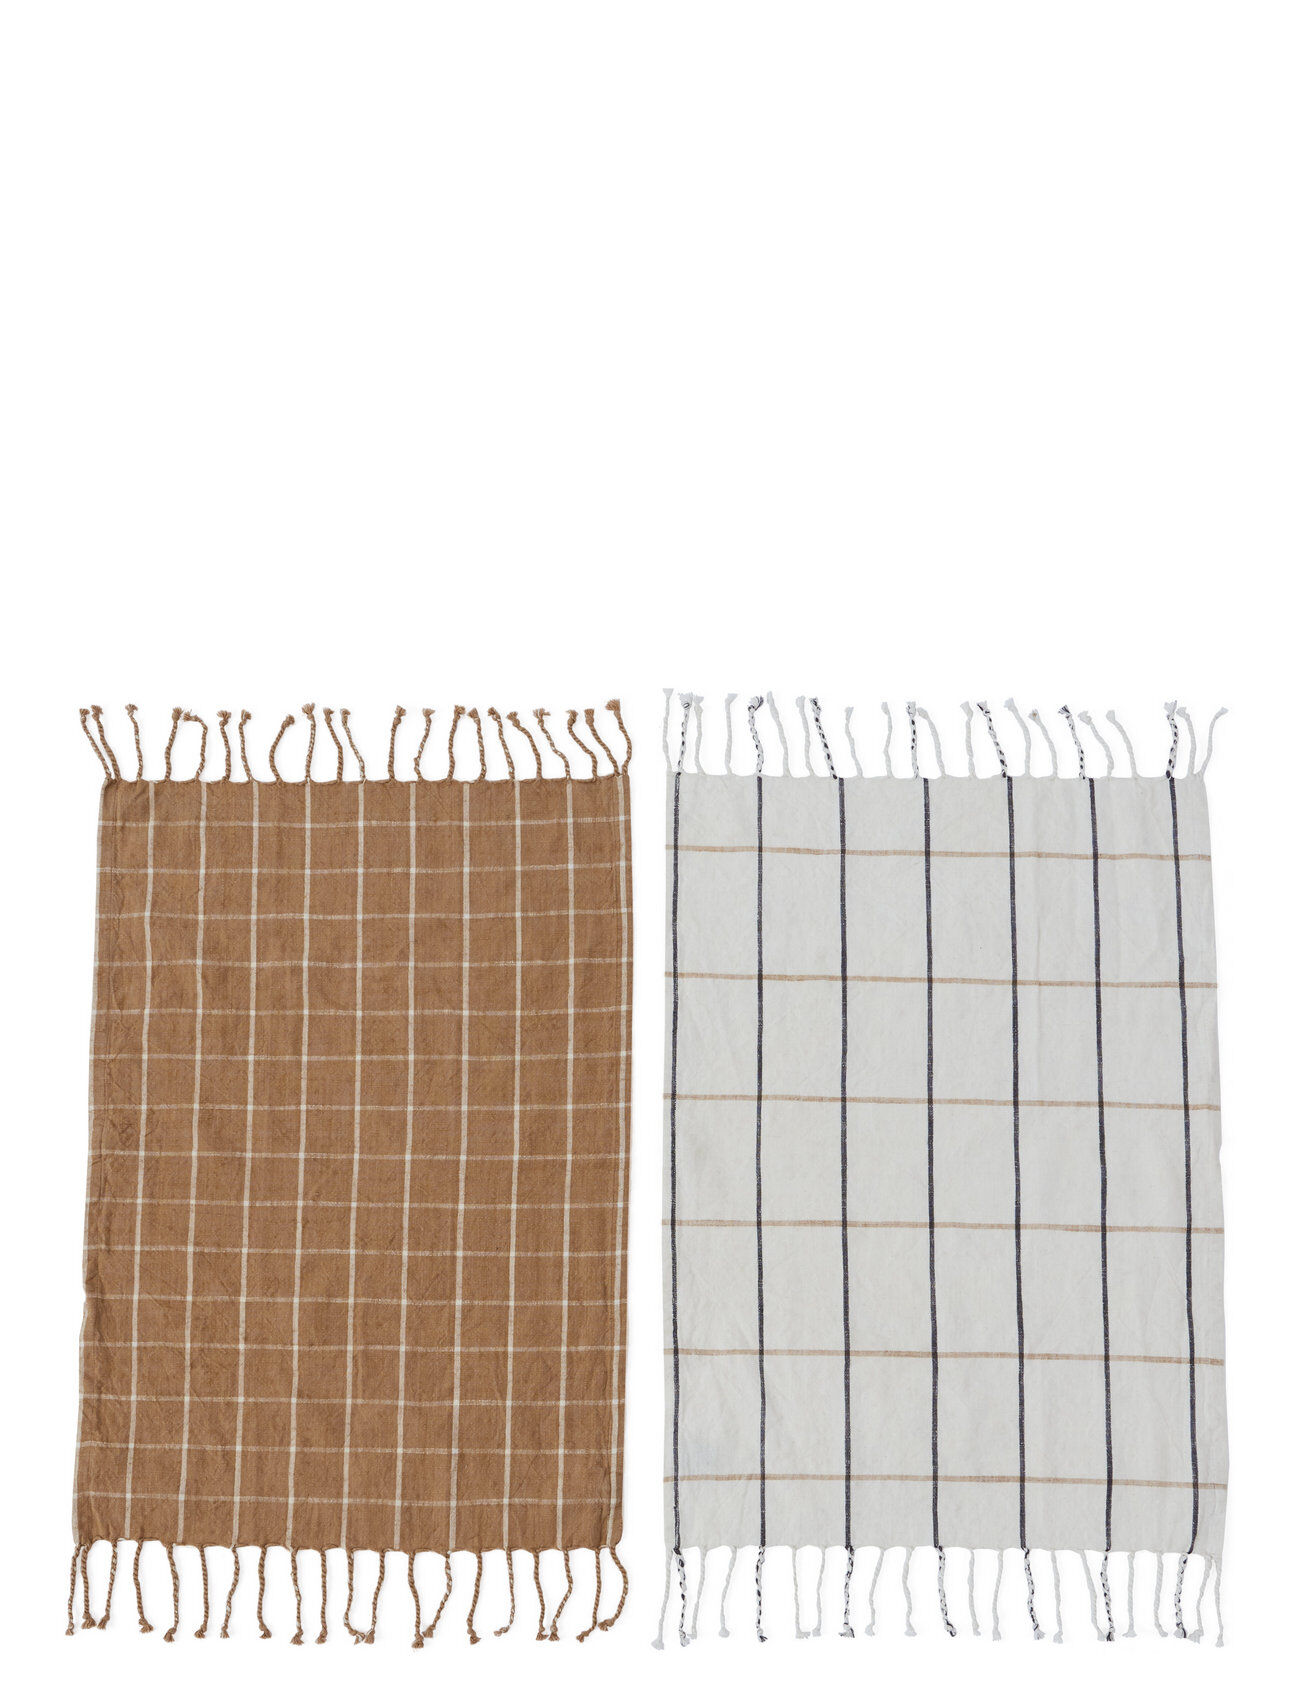 OYOY Living Design Gobi Tea Towel - Pack Of 2 Home Textiles Kitchen Textiles Kitchen Towels Brun OYOY Living Design